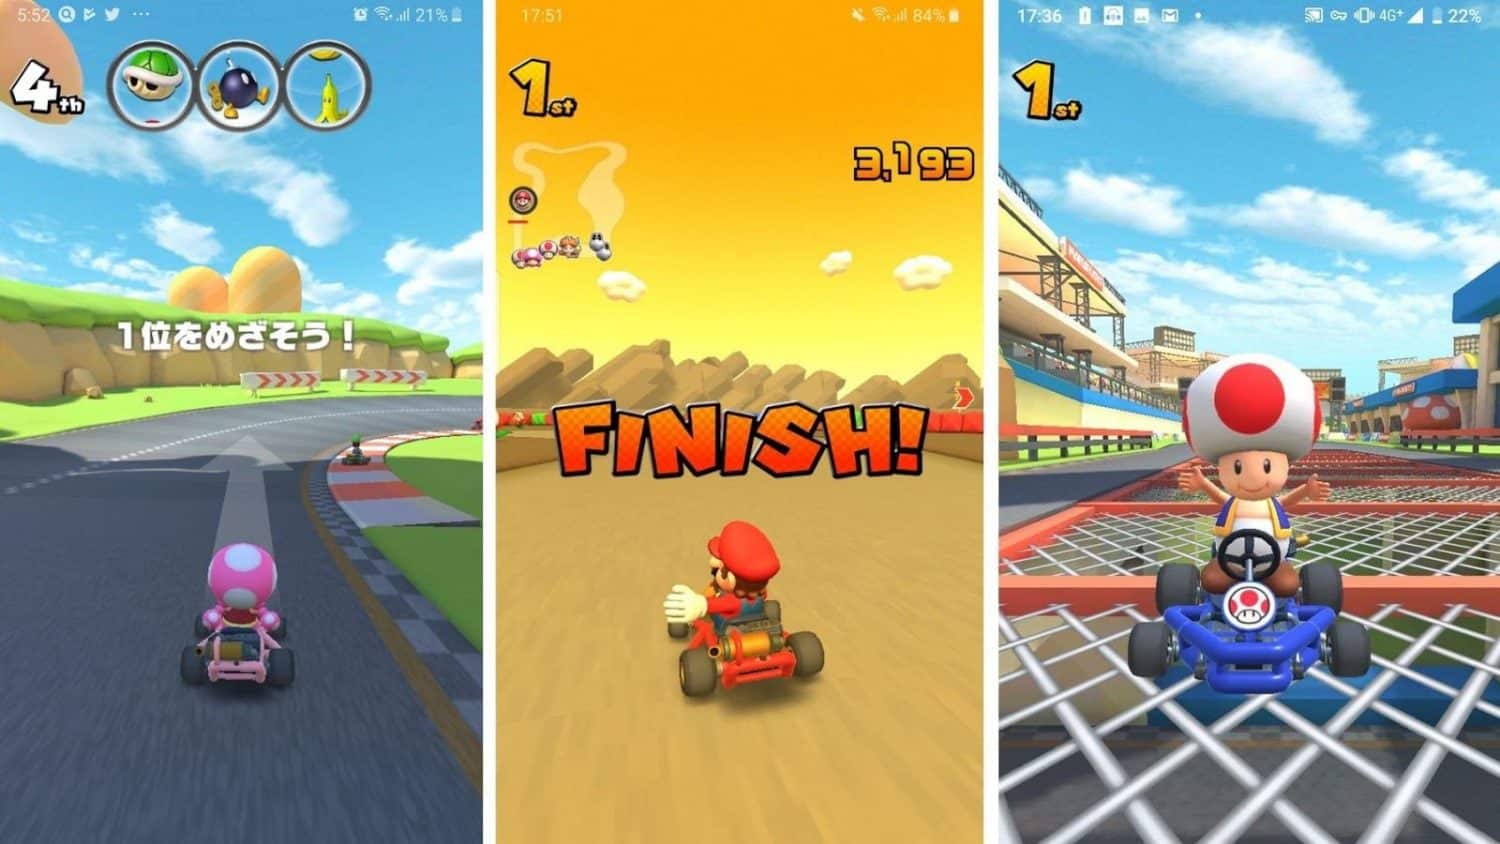 Nintendo confirma o lançamento do Mario Kart para smartphone em